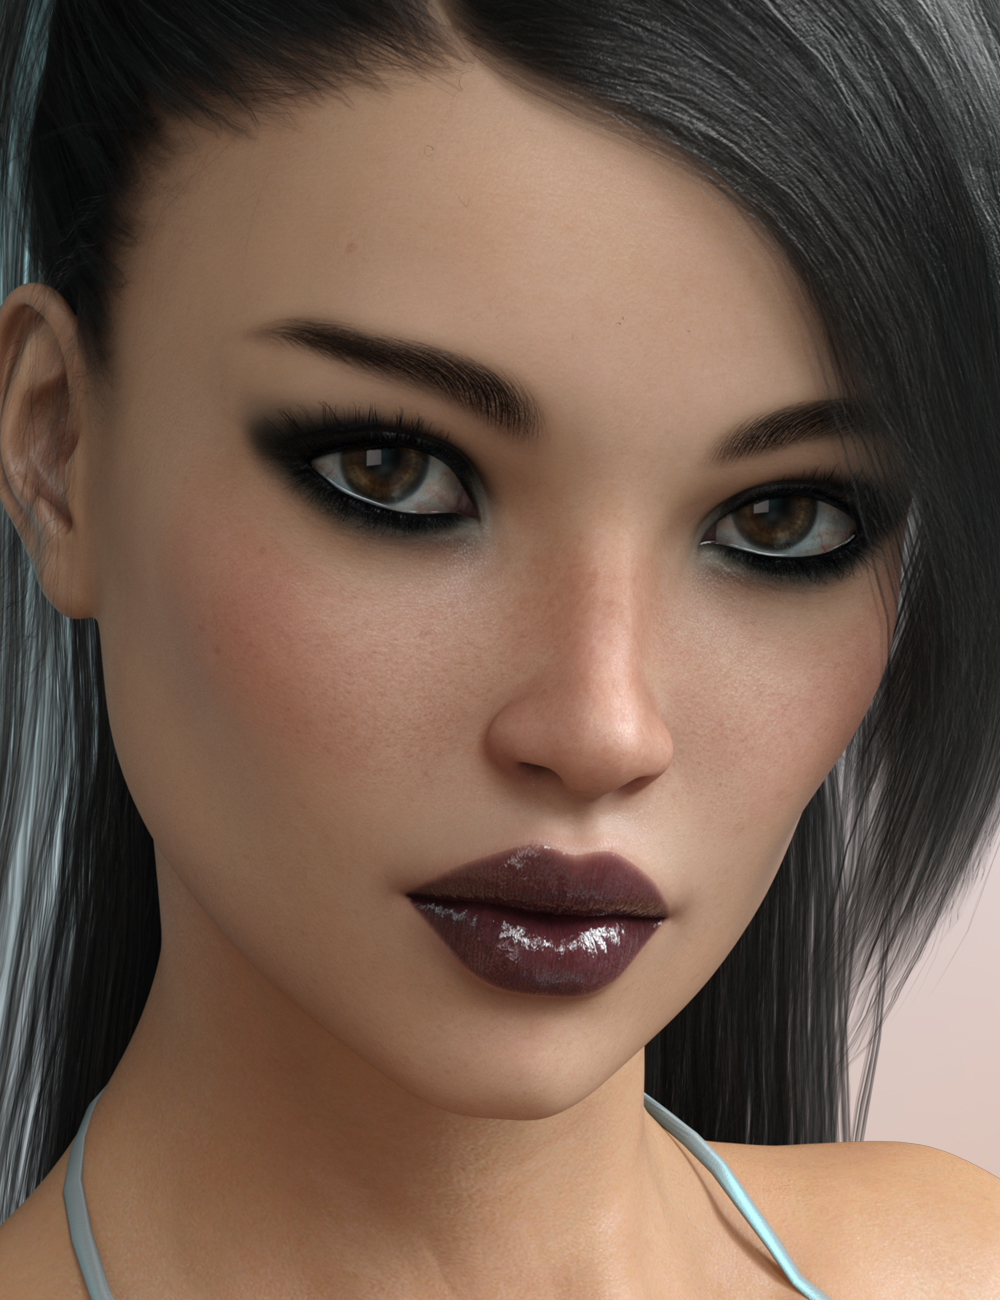 FW Ella HD for Genesis 3 Female by: Fred Winkler Art, 3D Models by Daz 3D